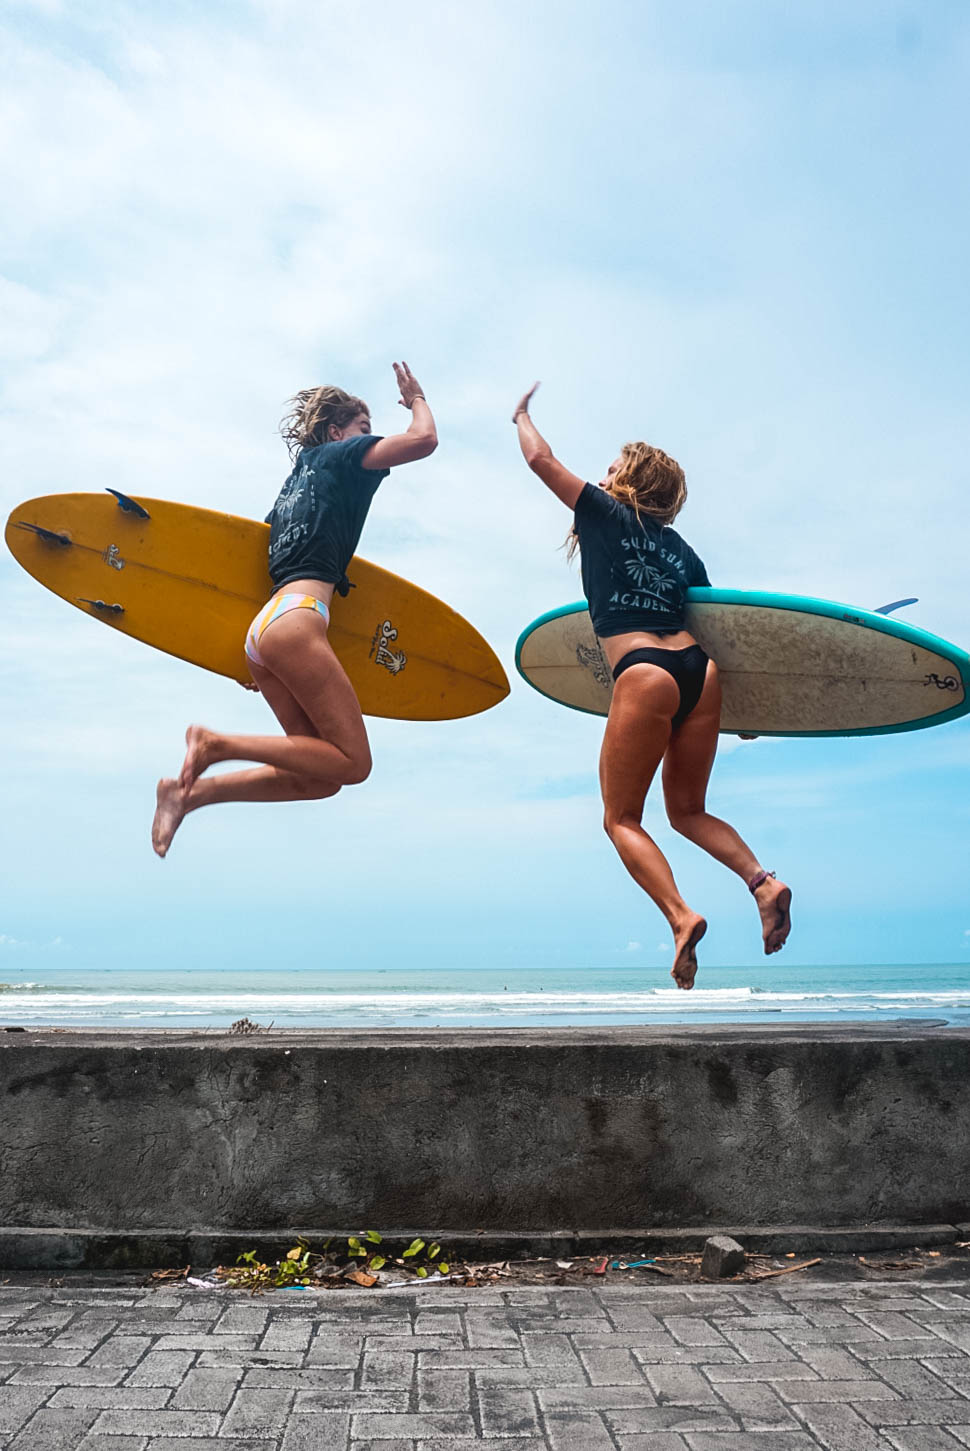 Surfen in bikini op het surfkamp op Bali!